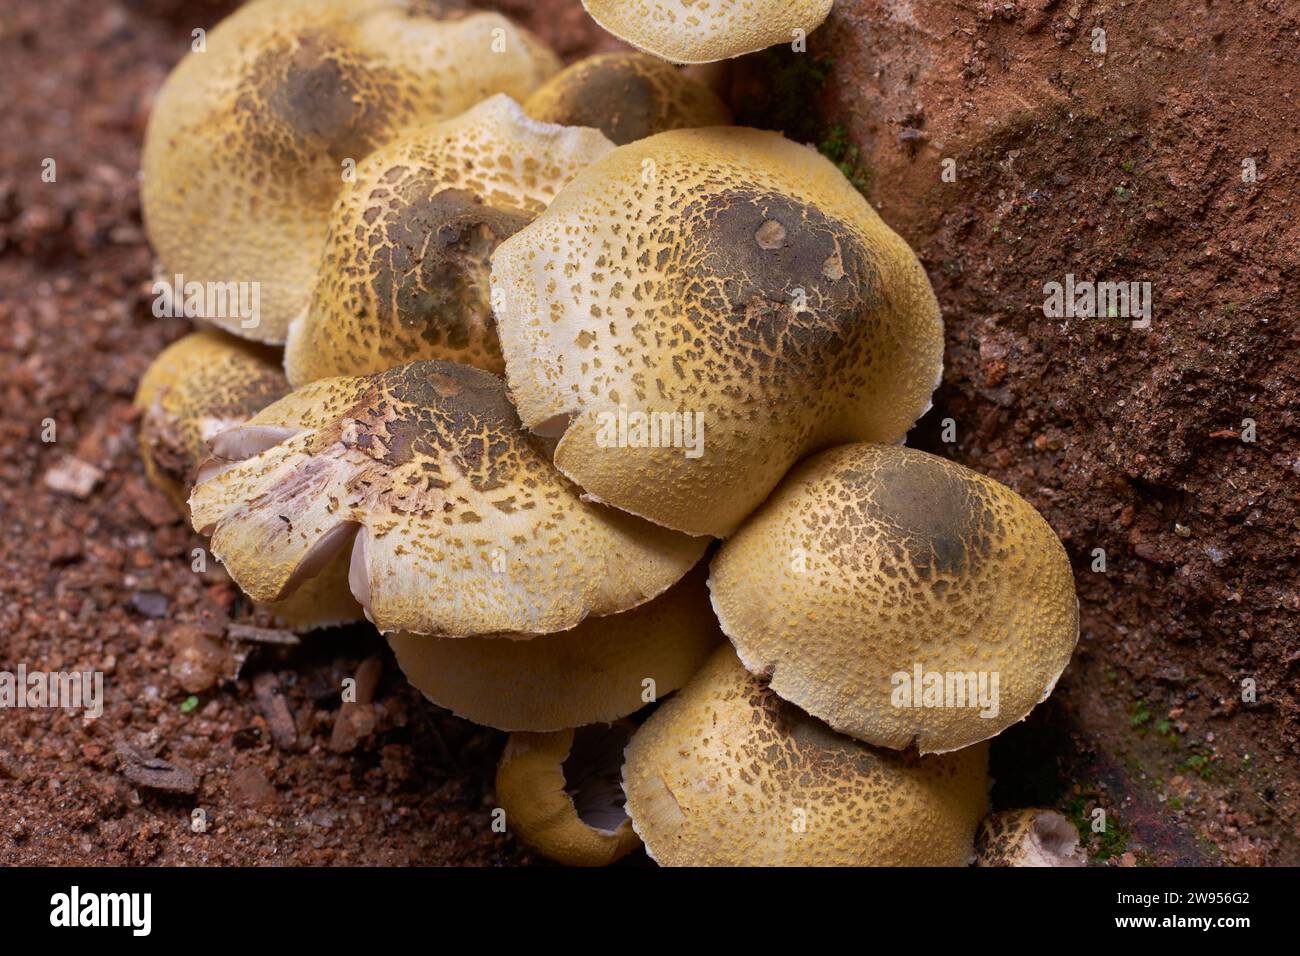 vista ravvicinata di un gruppo di funghi che spuntano dopo la pioggia, condizioni umide e fredde dopo la pioggia offrono un ambiente ideale per la loro crescita Foto Stock